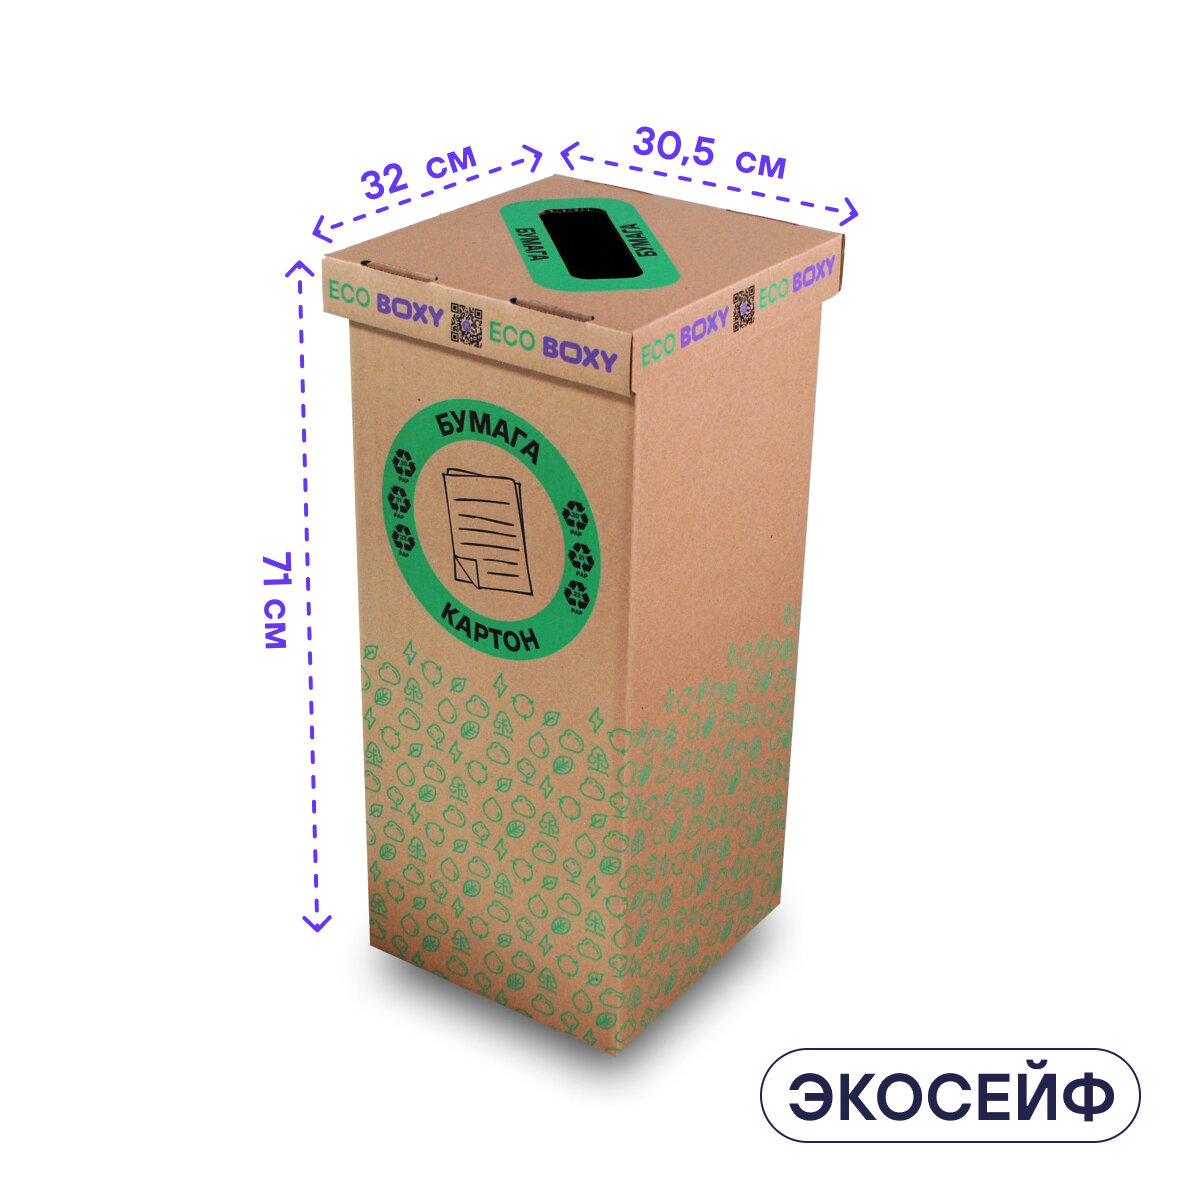 Набор контейнеров для раздельного сбора мусора BOXY экосейф, 58 л, В упаковке 3 шт: бумага, пластик, стекло.